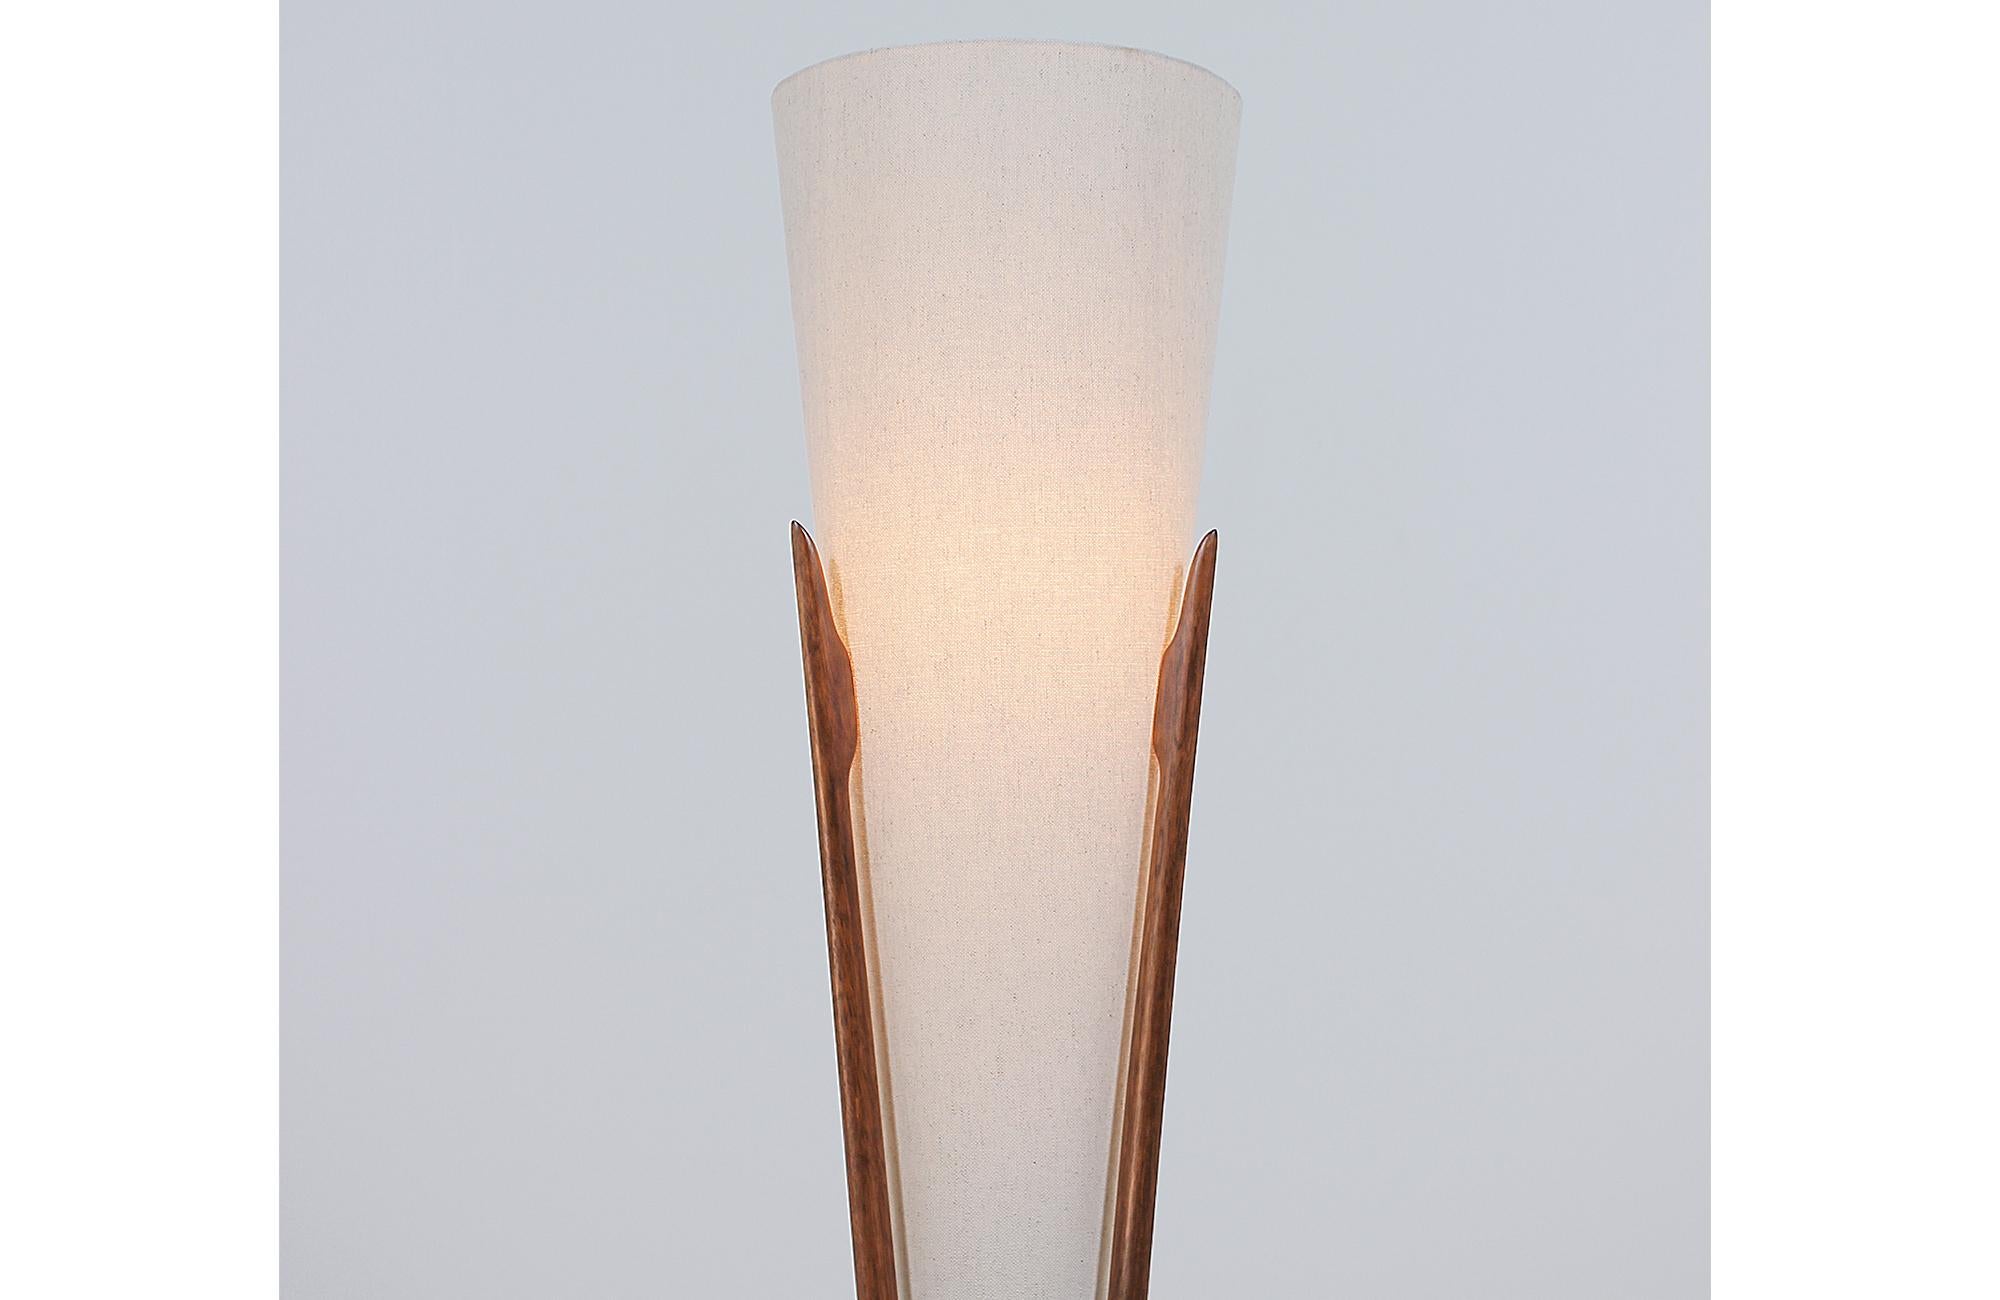 American Midcentury Sculpted Floor Lamp by Modeline